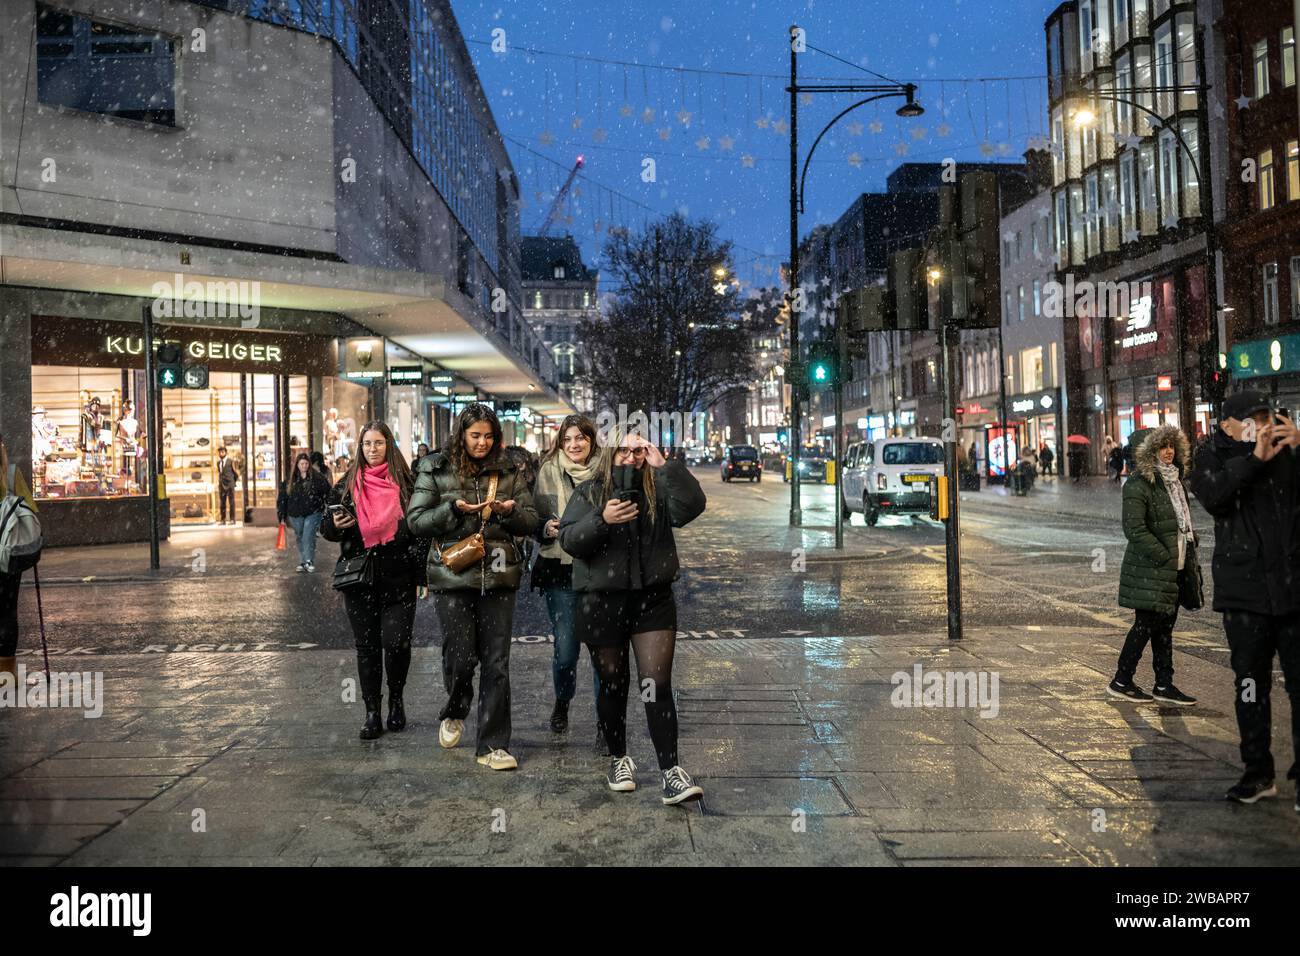 Les acheteurs bravent le froid hivernal pendant les averses glaciales et les averses de pluie sur Oxford Street, la rue la plus fréquentée de Londres, en Angleterre, au Royaume-Uni Banque D'Images